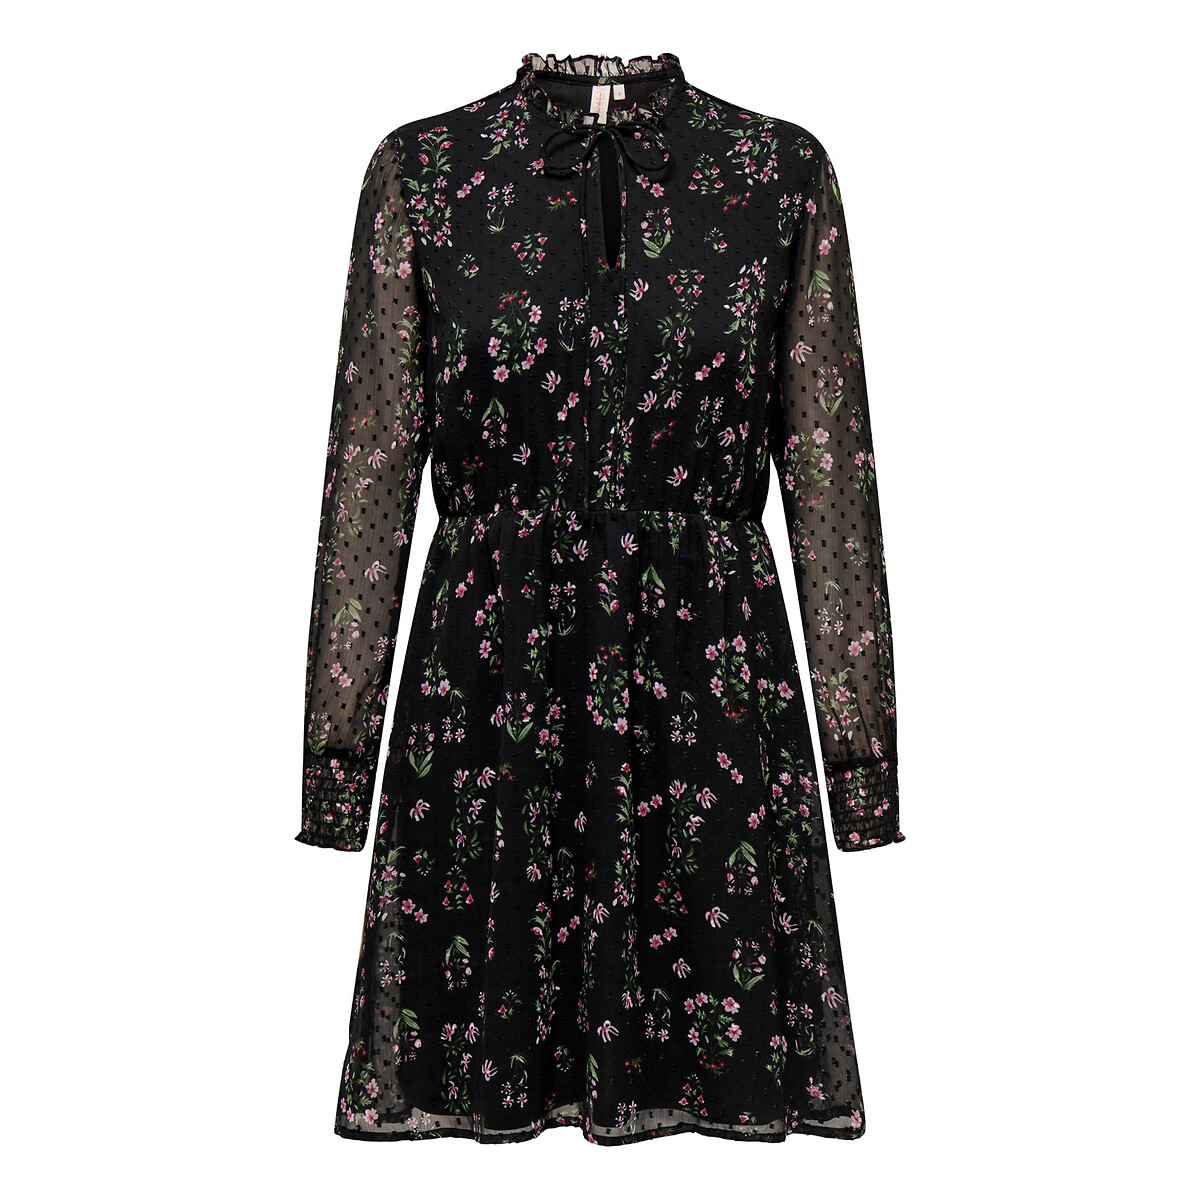 Платье Короткое расклешенное с цветочным принтом XXL черный LaRedoute, размер XXL - фото 1